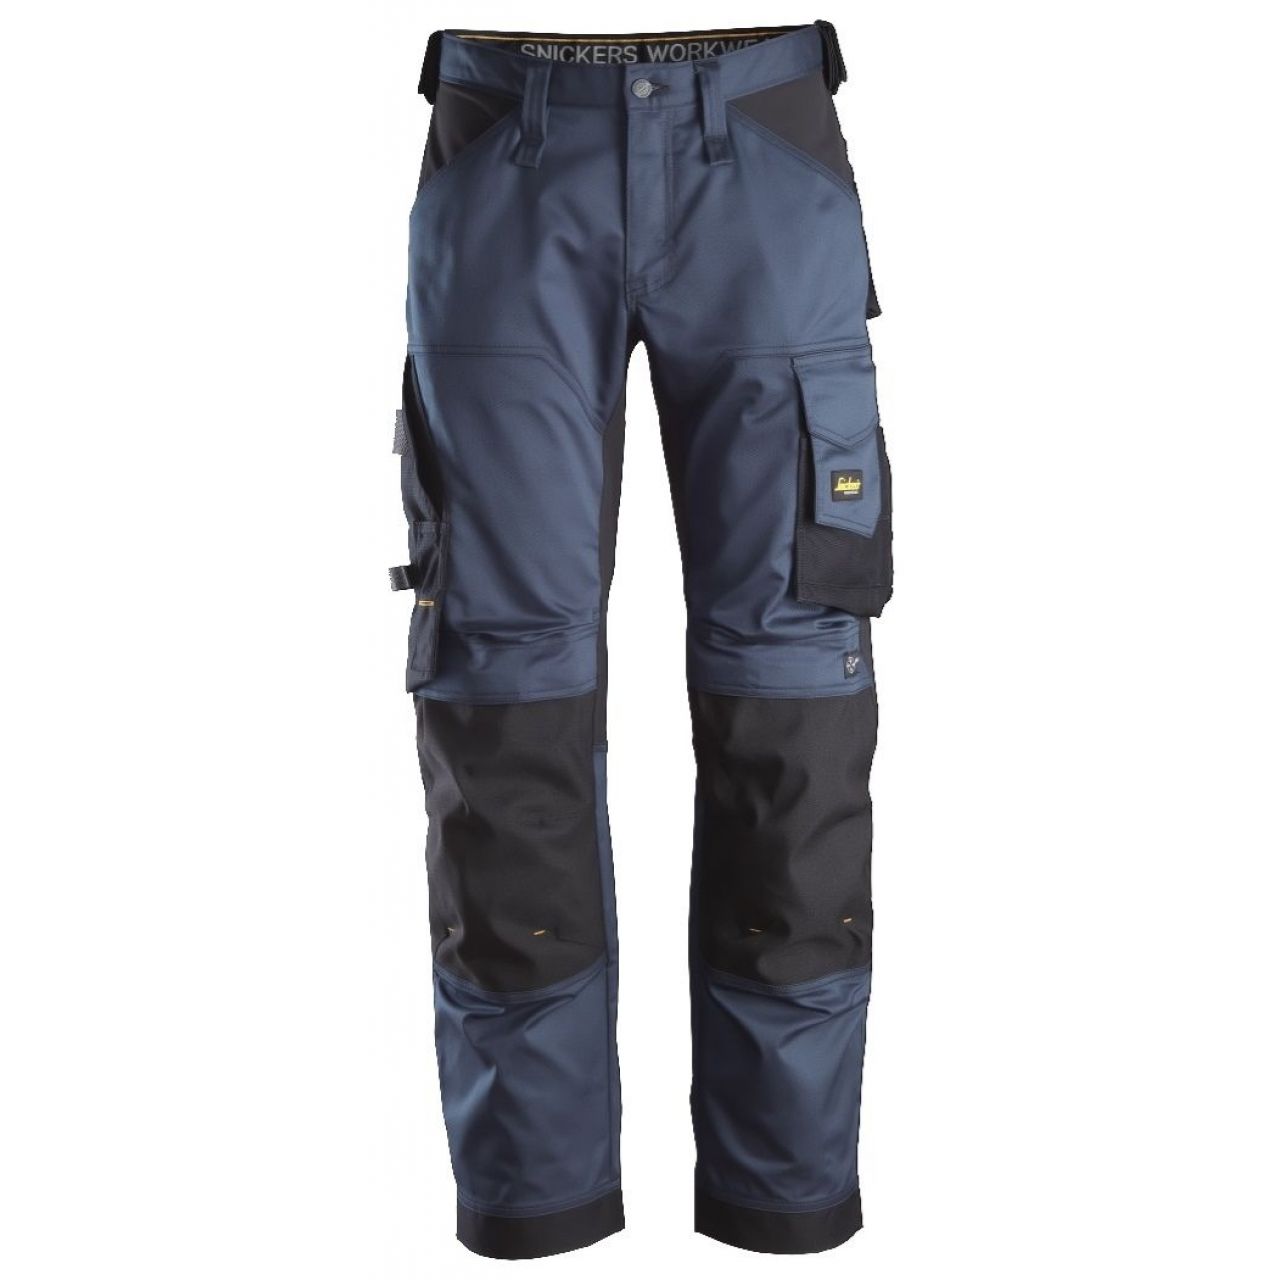 Pantalon elastico ajuste holgado AllroundWork azul marino-negro talla 060